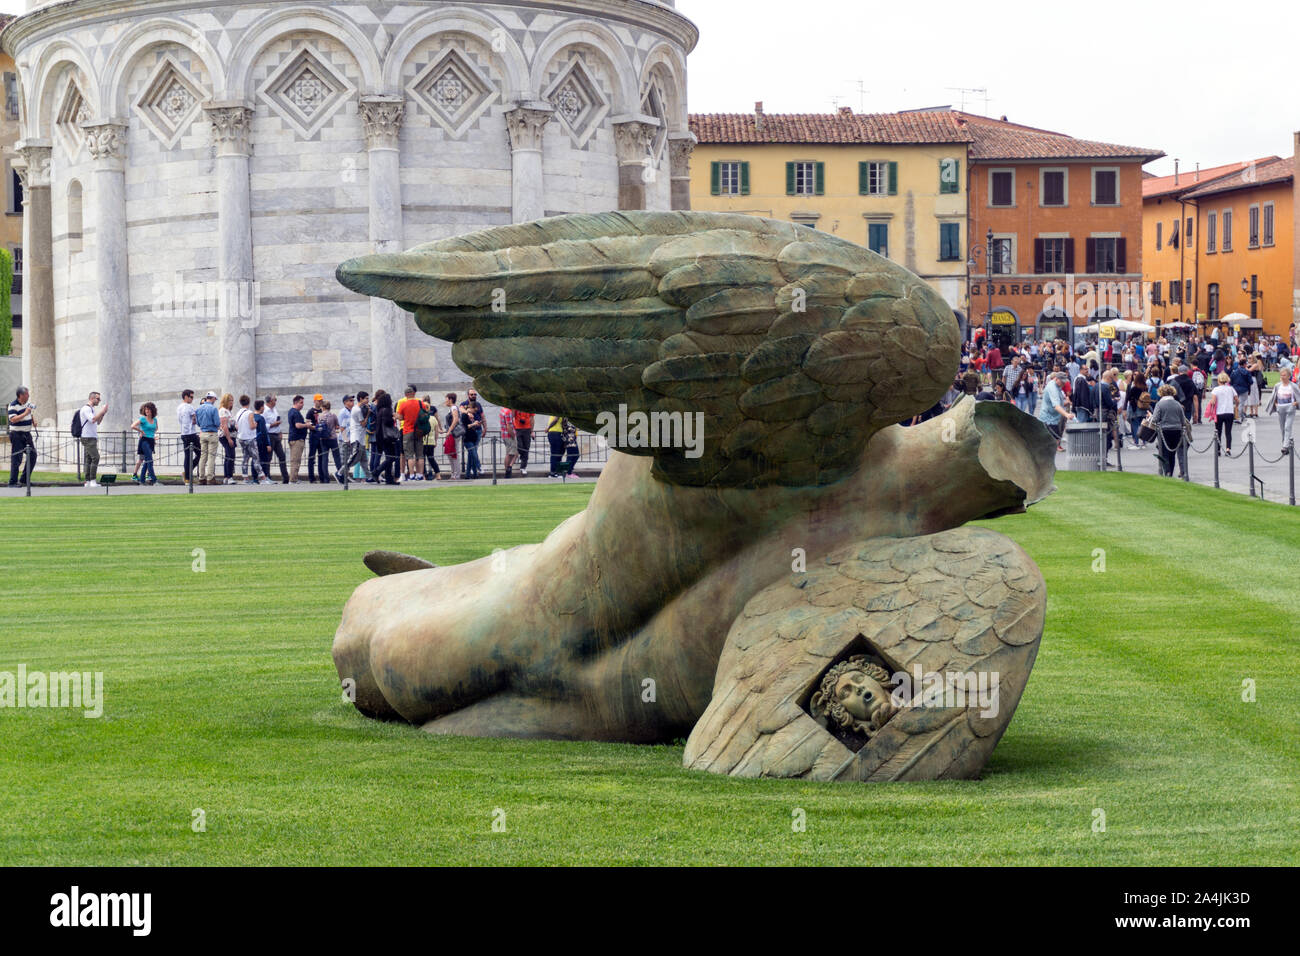 Pisa sculpture immagini e fotografie stock ad alta risoluzione - Alamy